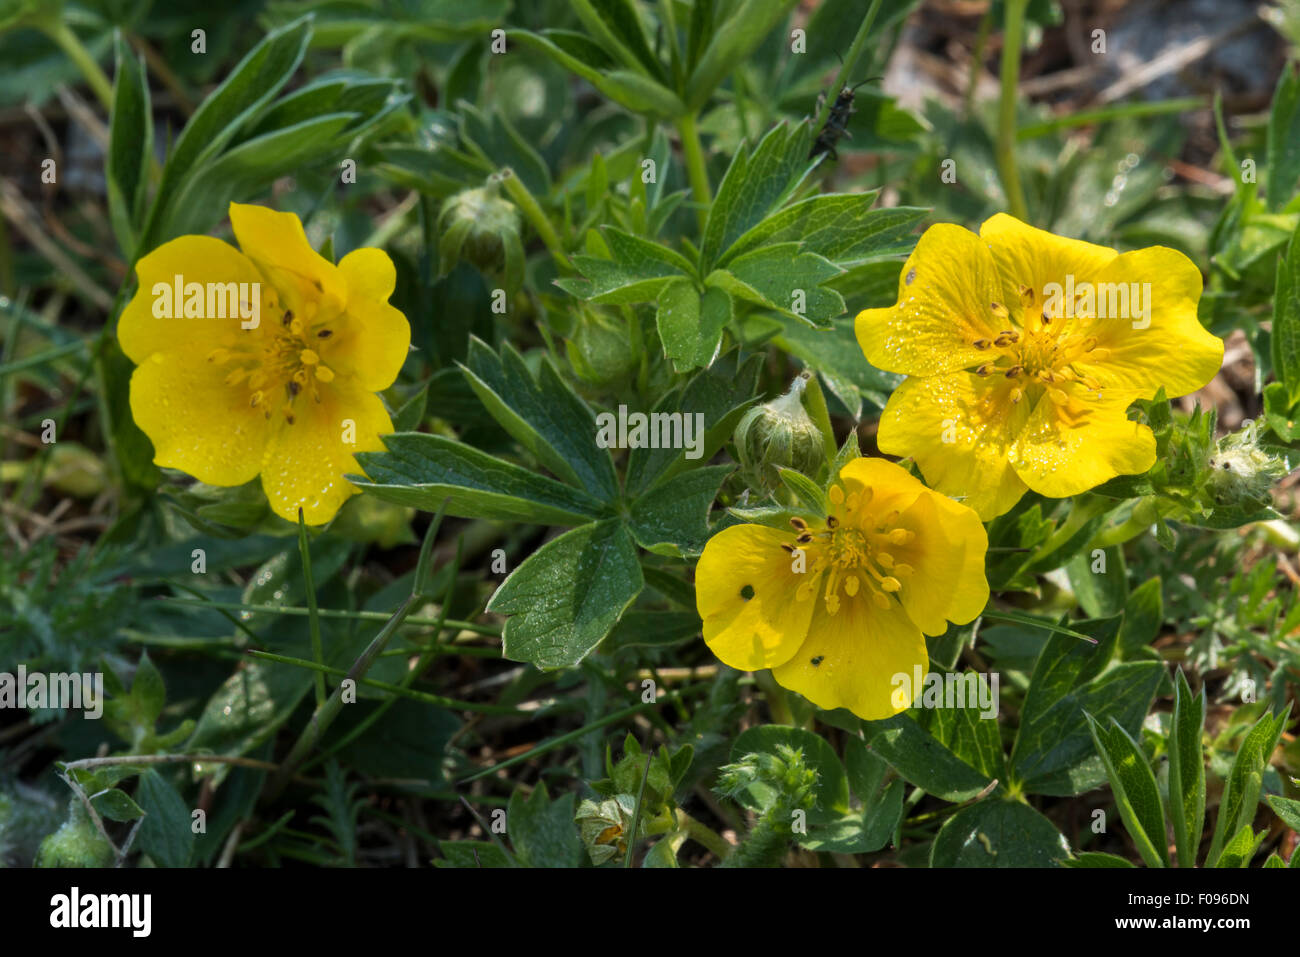 Alpine cinquefoil (Potentilla crantzii / Potentilla verna L.) in flower in the Alps Stock Photo